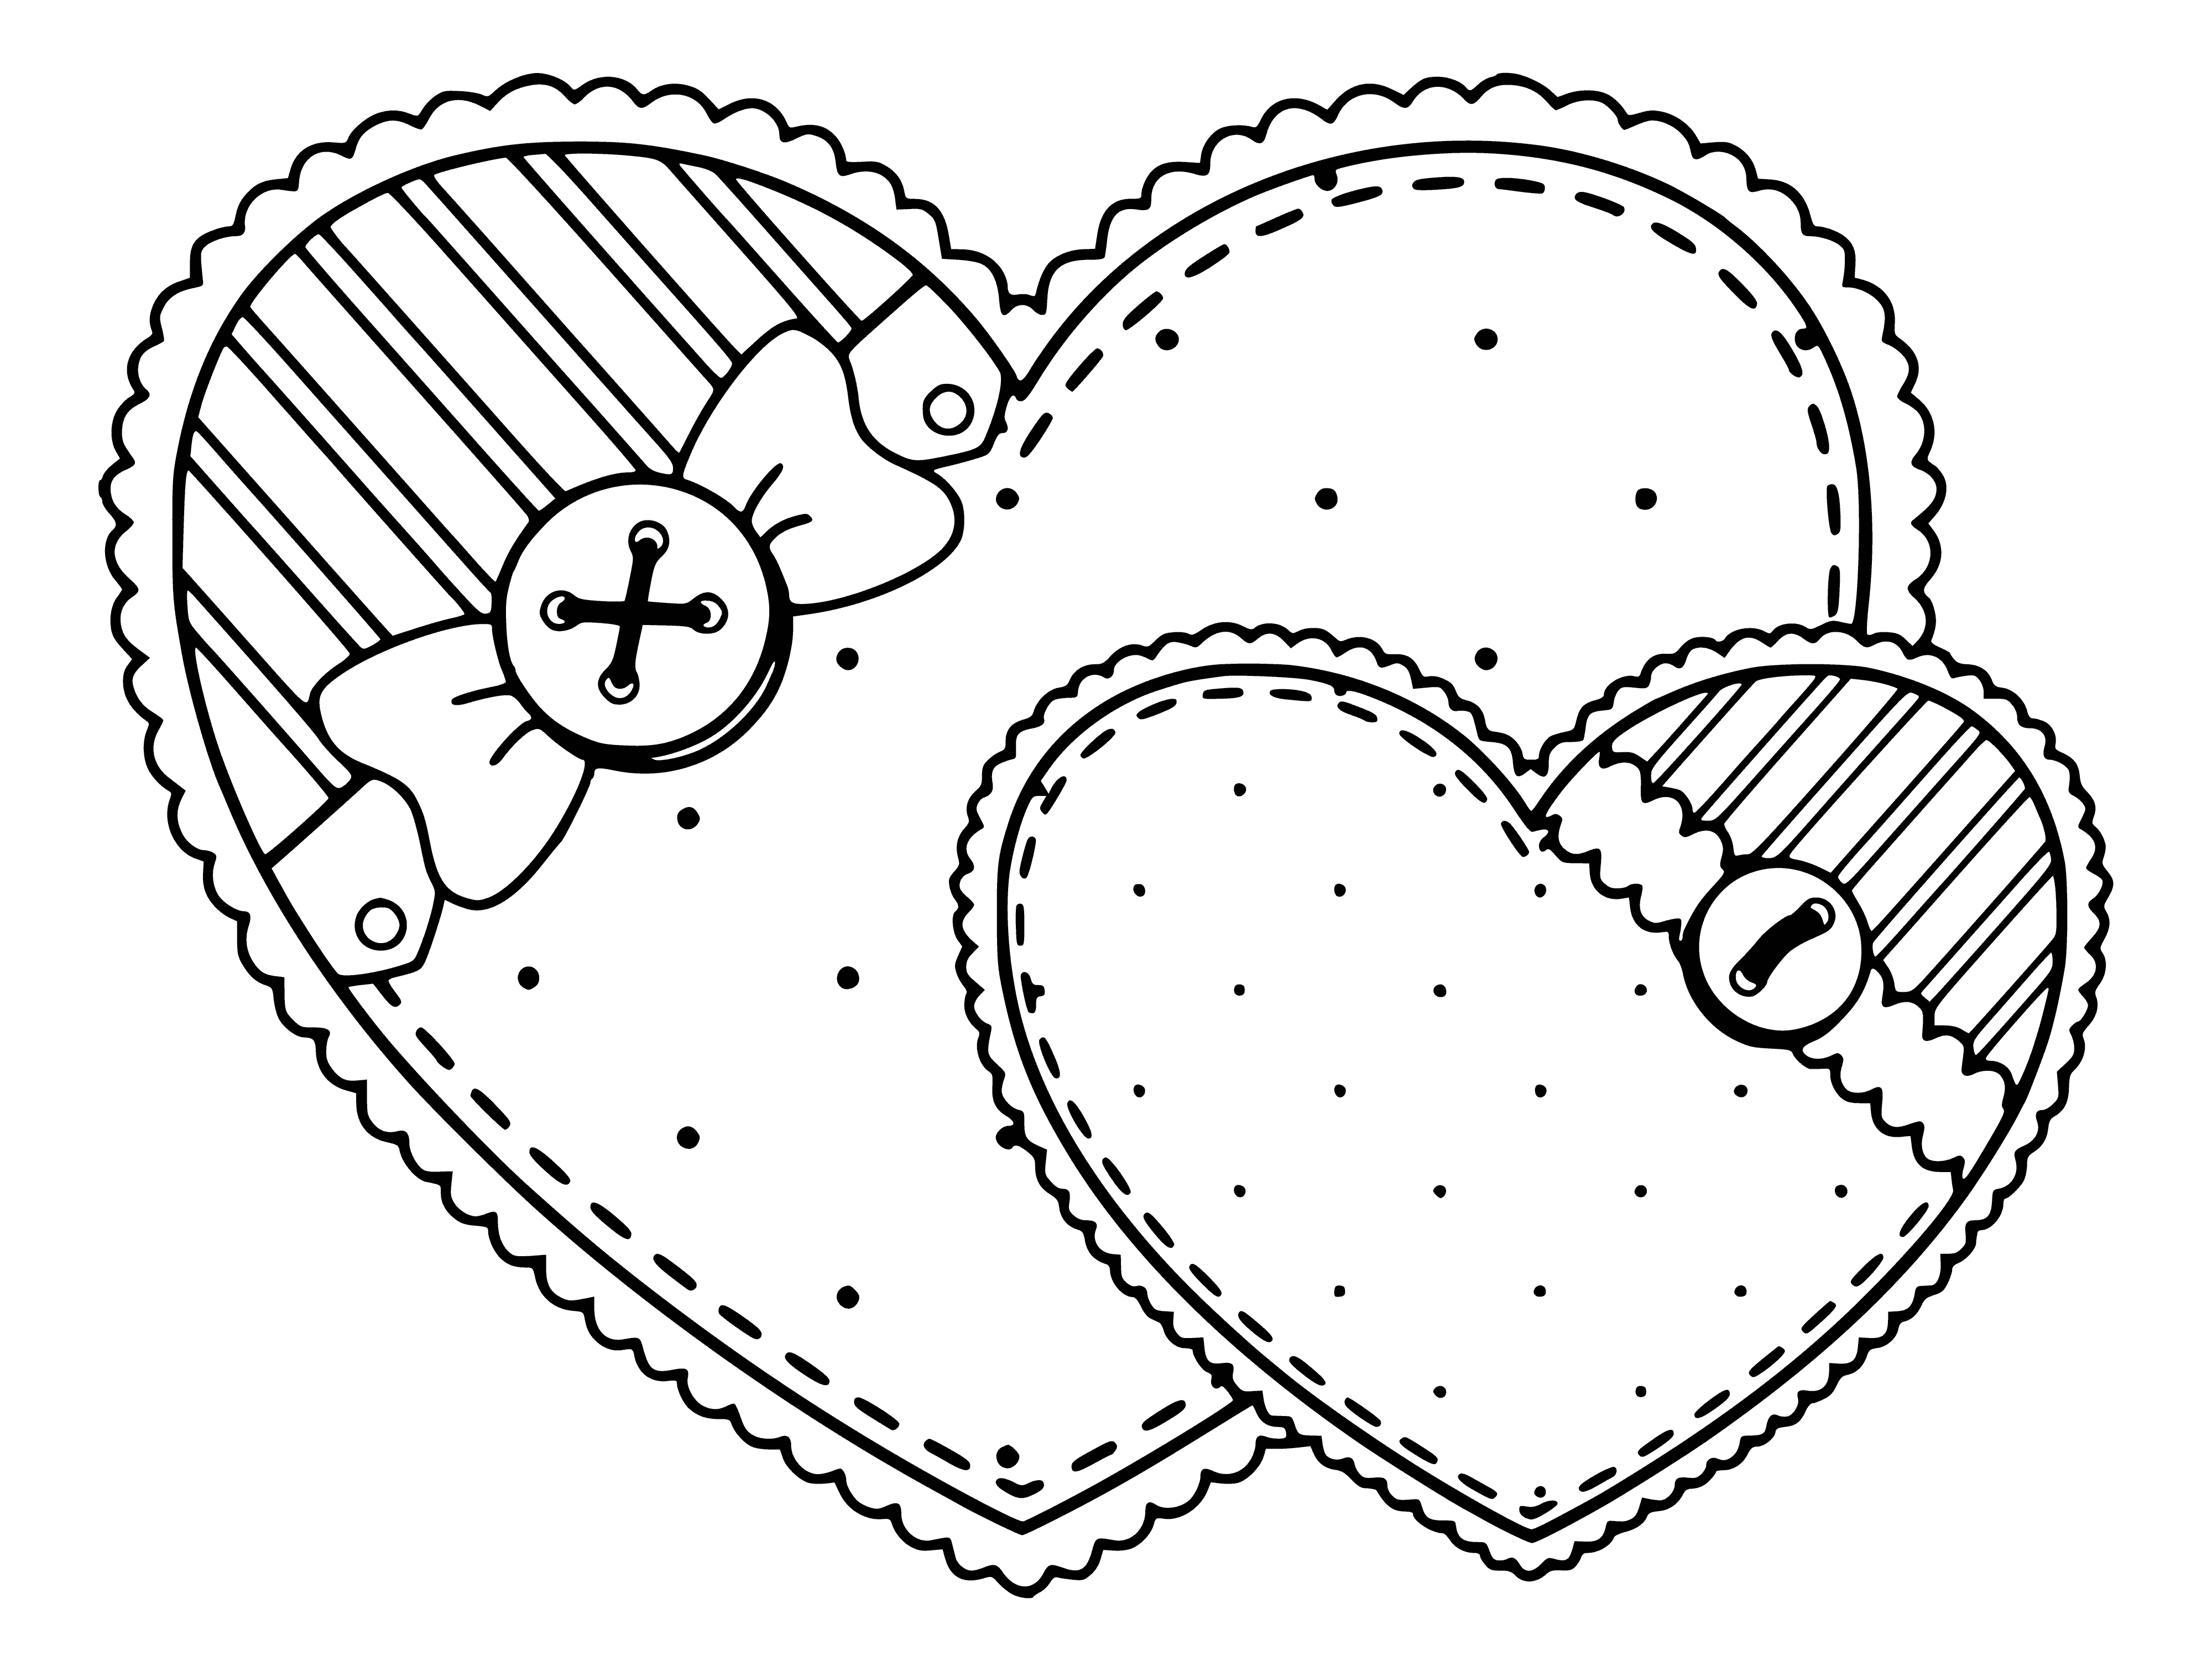 İki kalp boyama sayfası